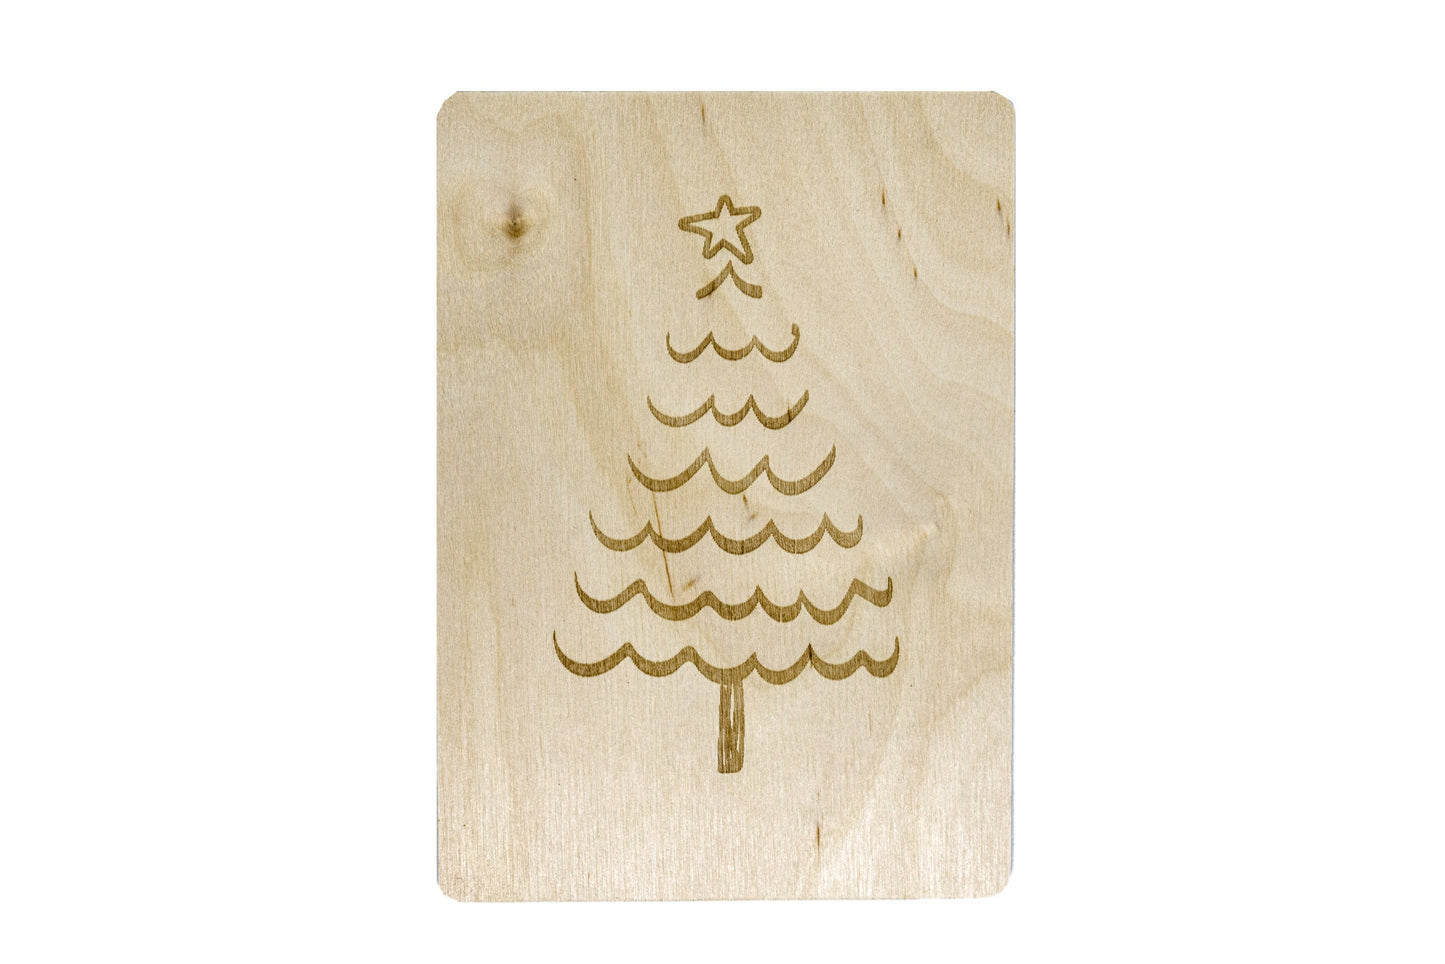 Holzpostkarte • Weihnachtsbaum • Weihnachten • Deko • Holzkarte • Postkarte mit Weihnachtsmotiv • Lasergravur • 14x10 cm